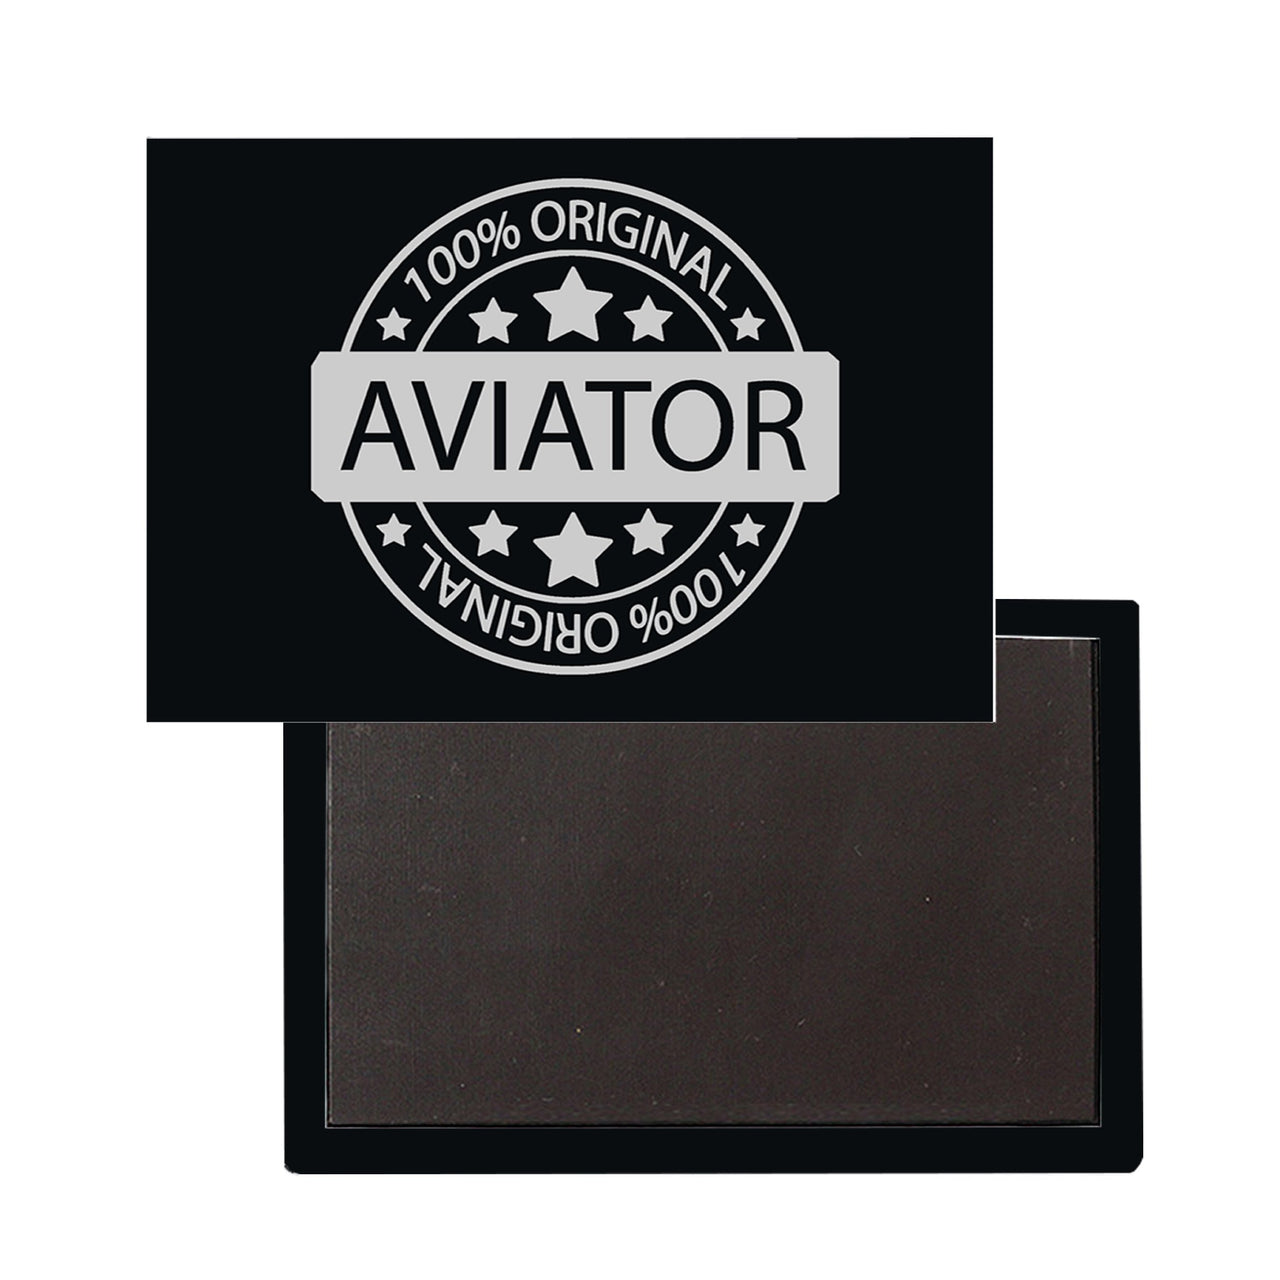 %100 Original Aviator Designed Magnet Pilot Eyes Store 